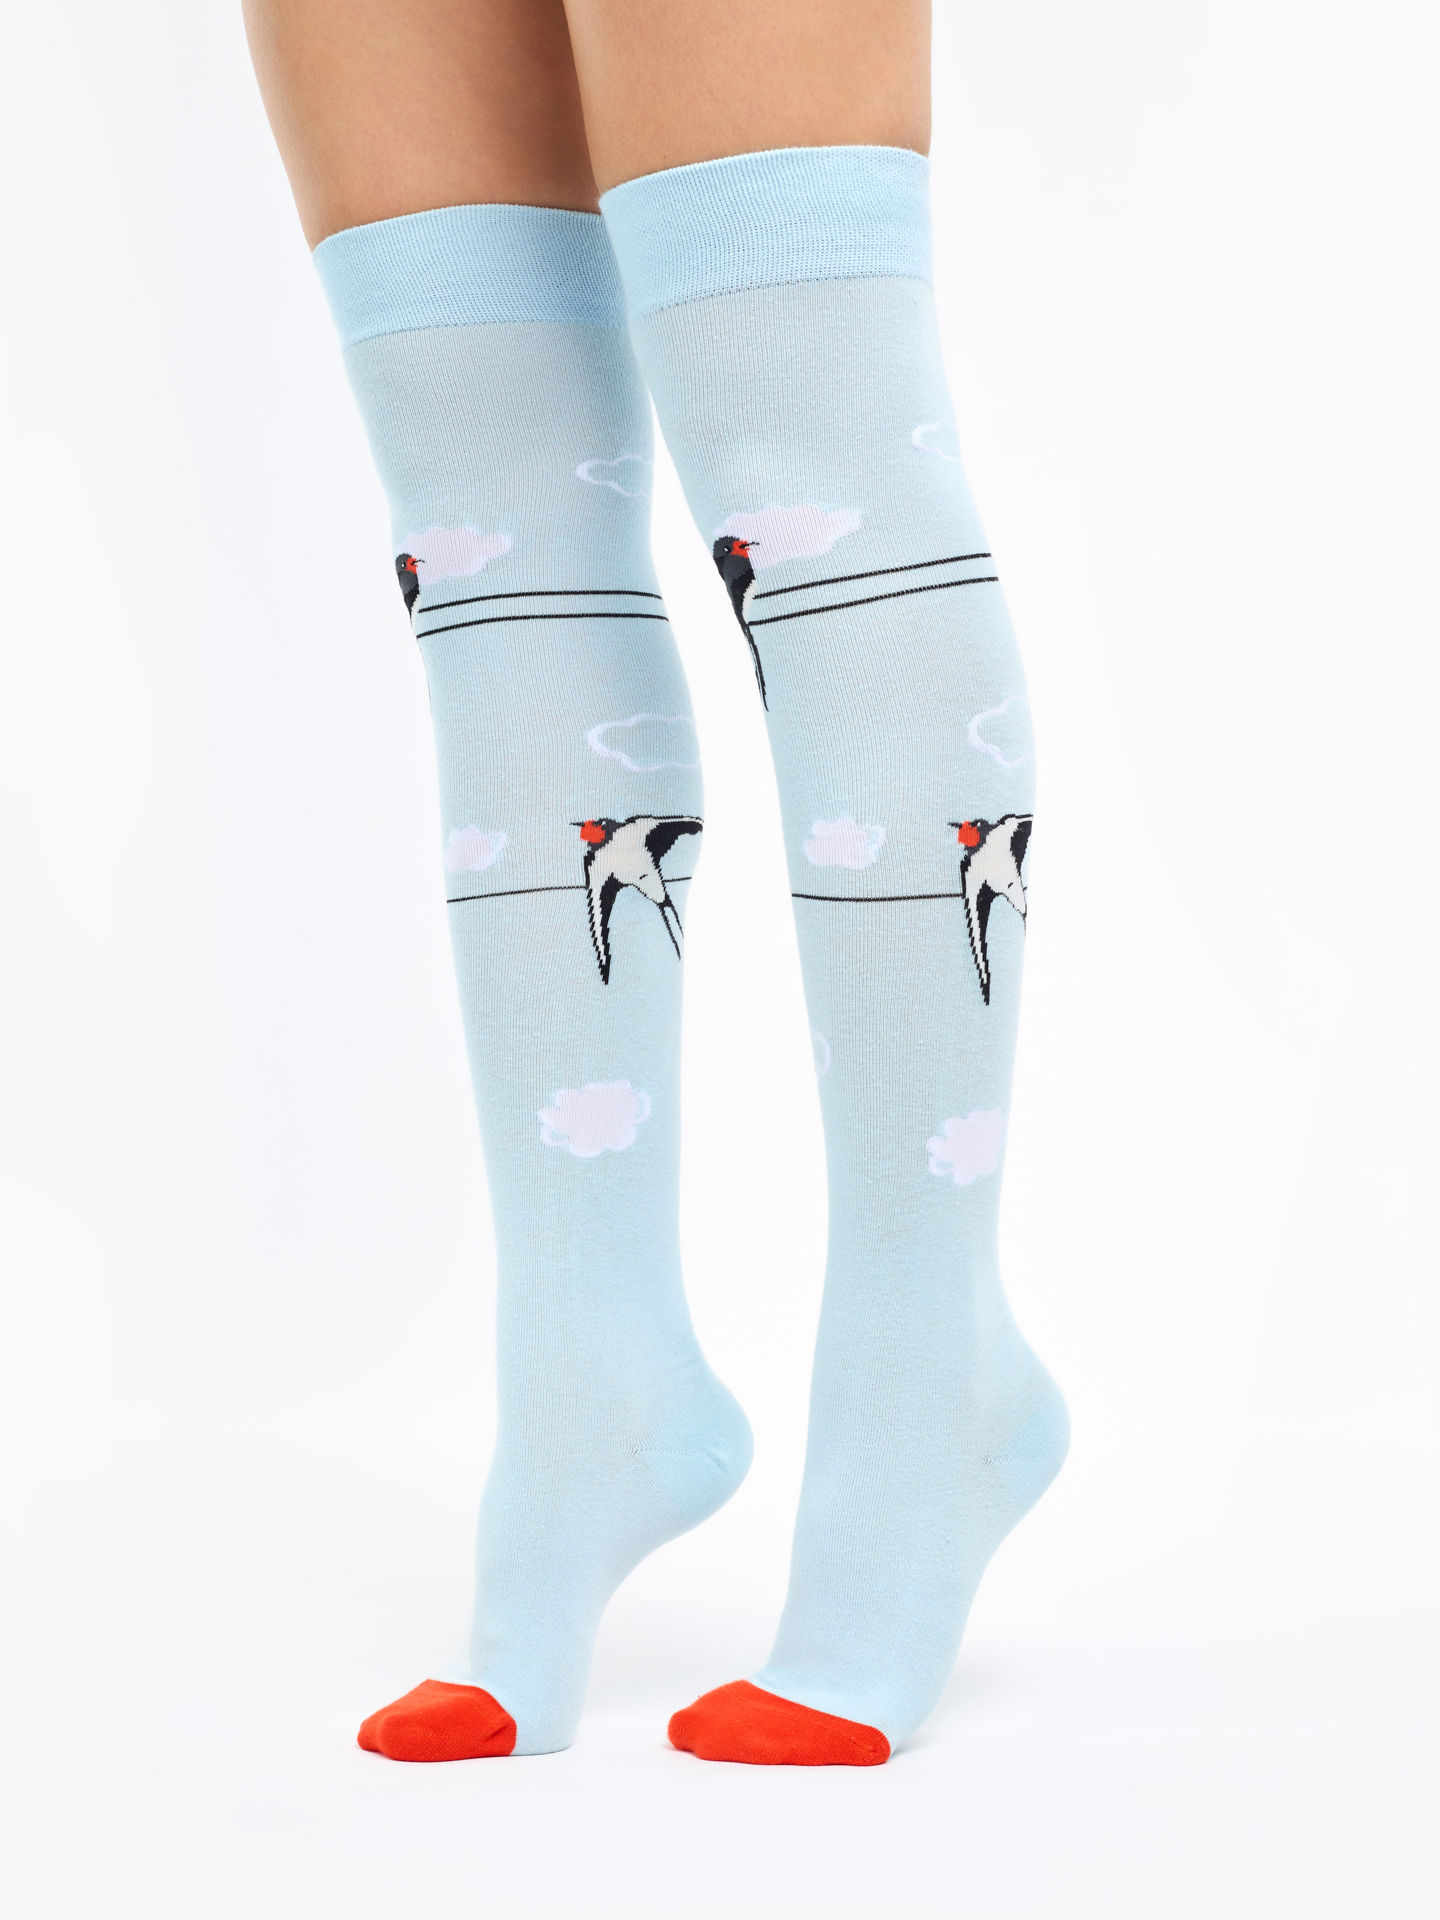 Chaussettes rigolotes hautes au-dessus des genoux pour femmes de 4.99 €